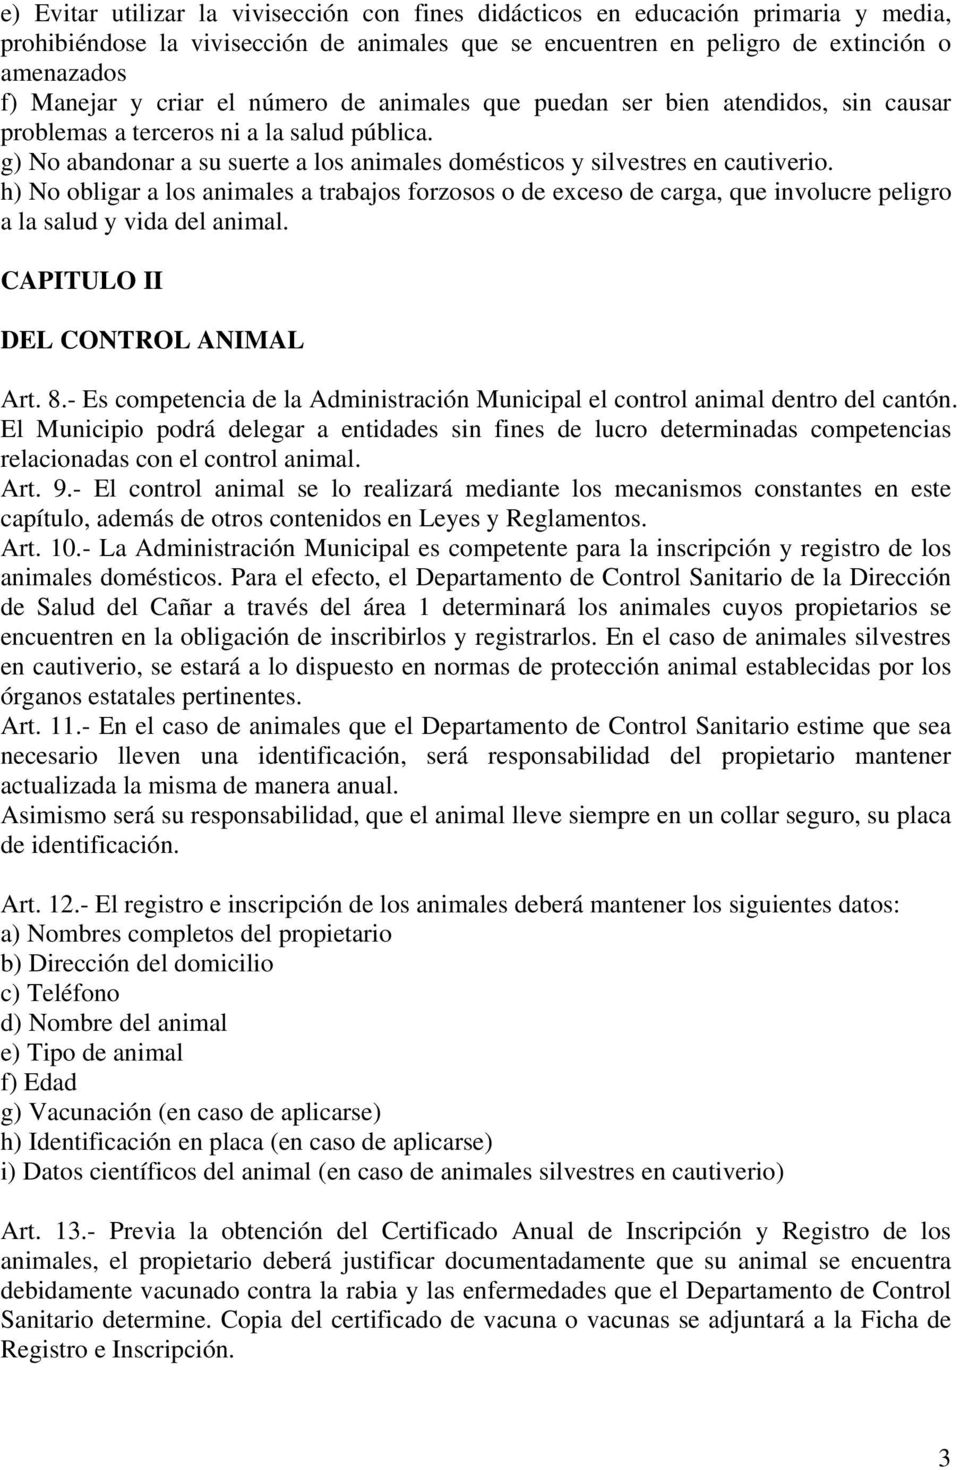 h) No obligar a los animales a trabajos forzosos o de exceso de carga, que involucre peligro a la salud y vida del animal. CAPITULO II DEL CONTROL ANIMAL Art. 8.